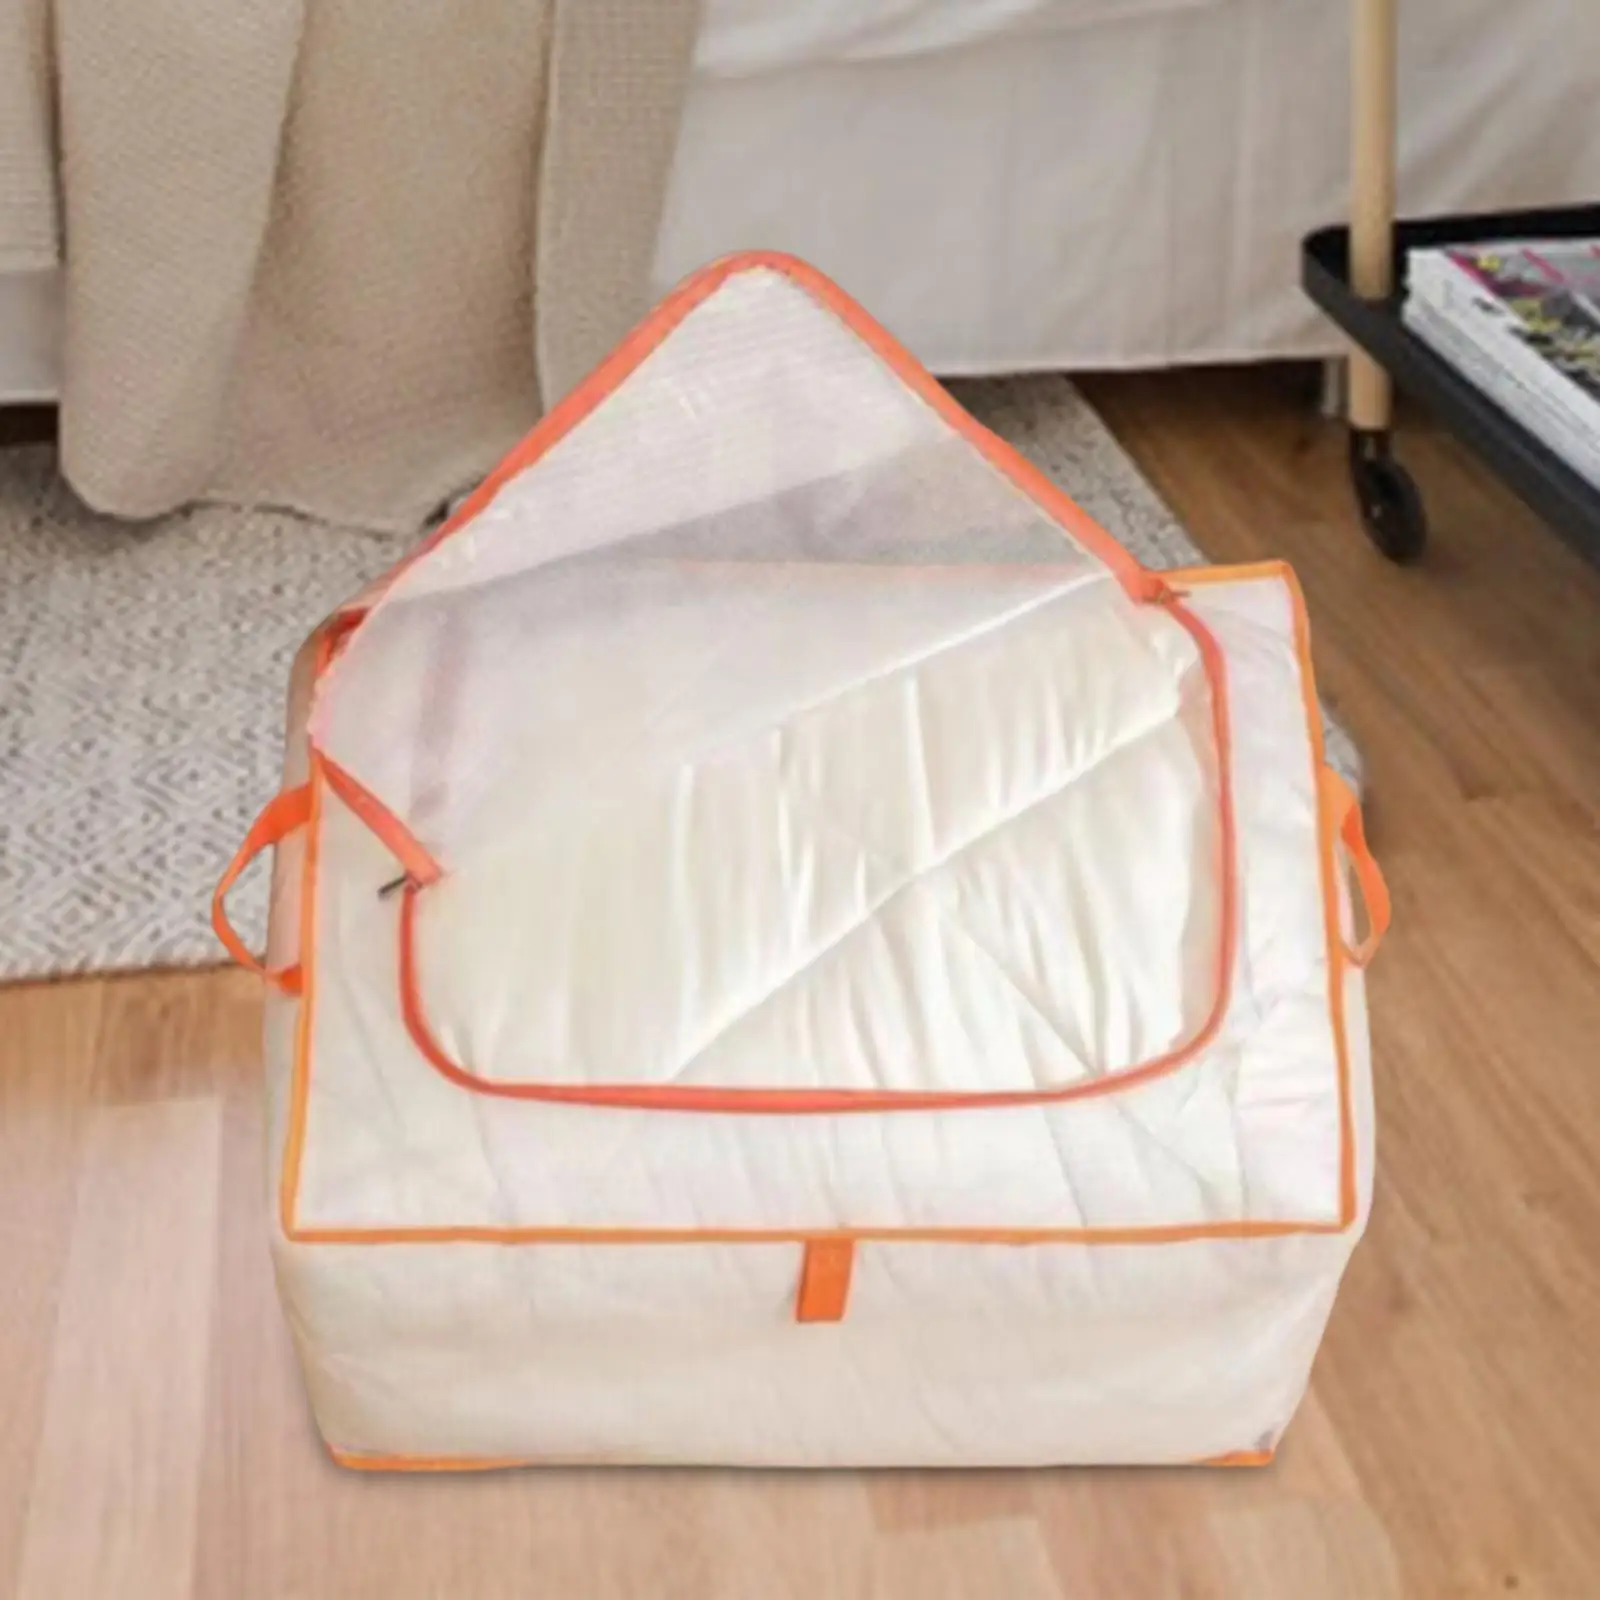 Clothes Storage Bag PP Multipurpose under Bed Storage Bins for College Dorm Comforter Bedding Transporting Organizing Blanket